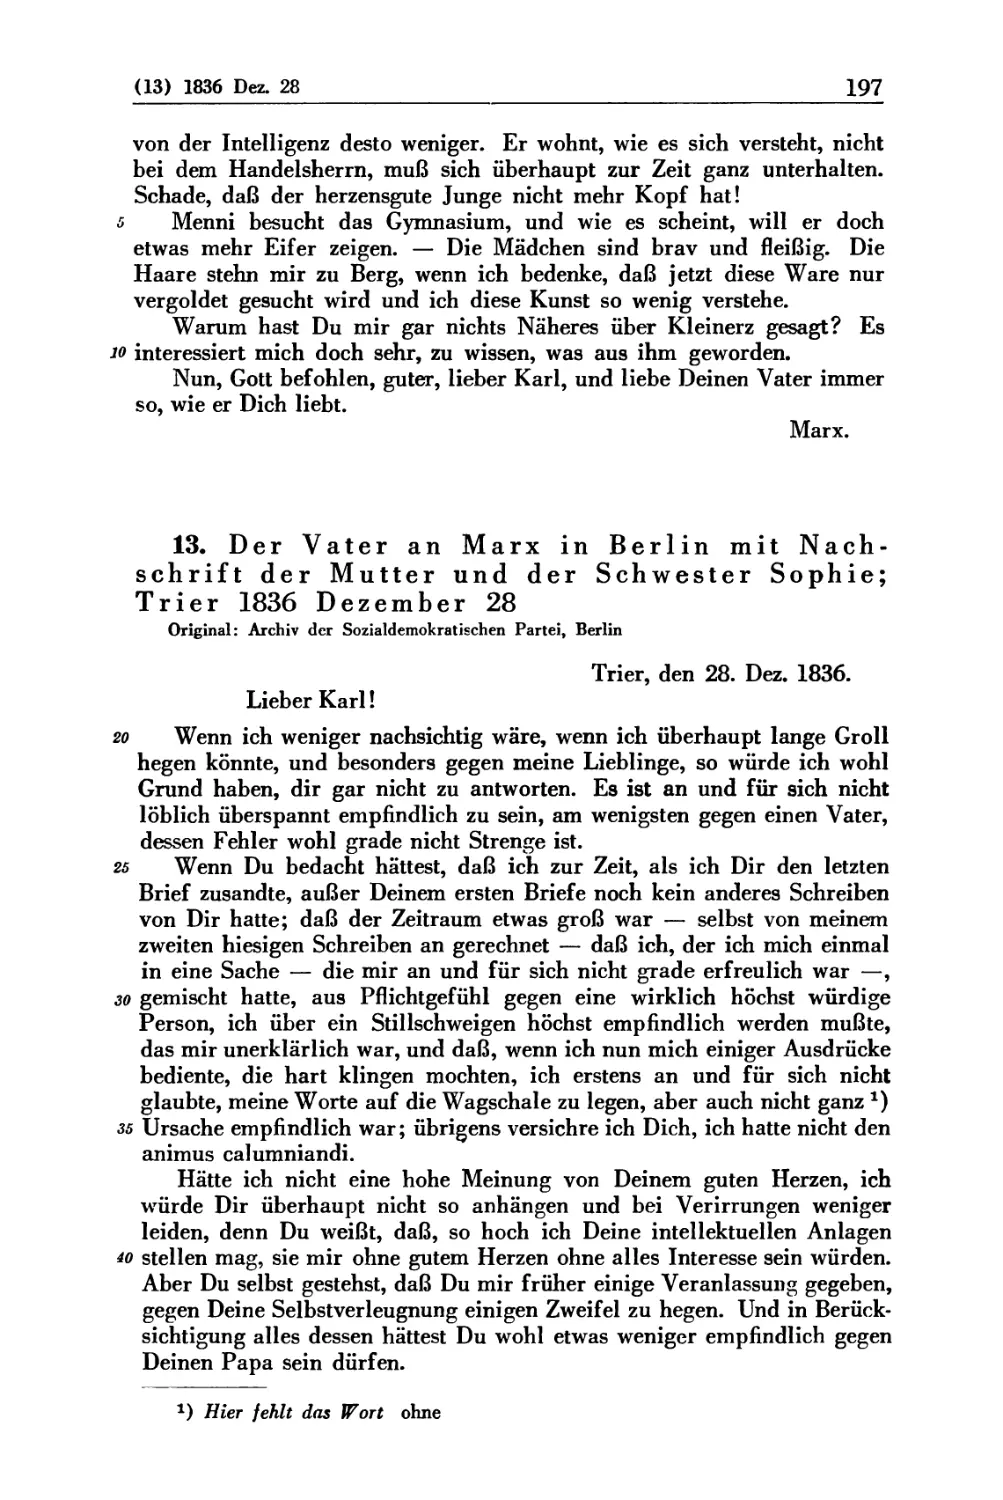 13. Der Vater an Marx in Berlin mit Nachschrift der Mutter und der Schwester Sophie; Trier 1836 Dezember 28